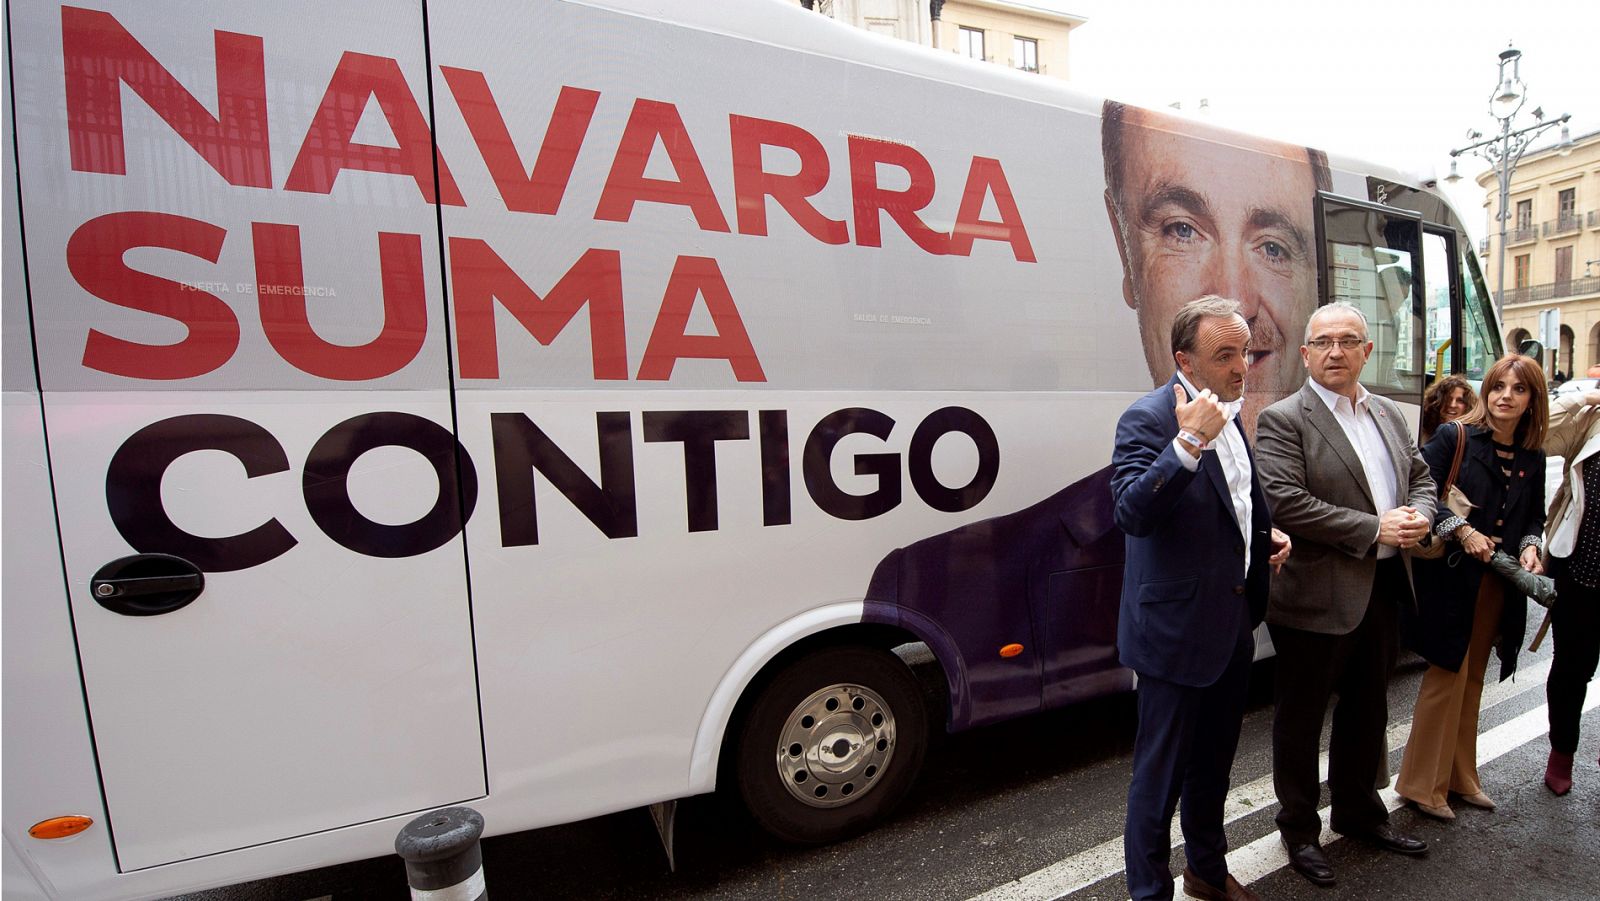 Elecciones autonómicas: La coalición de PP, UPN y Cs podría ganar en Navarra pero no se garantiza el gobierno